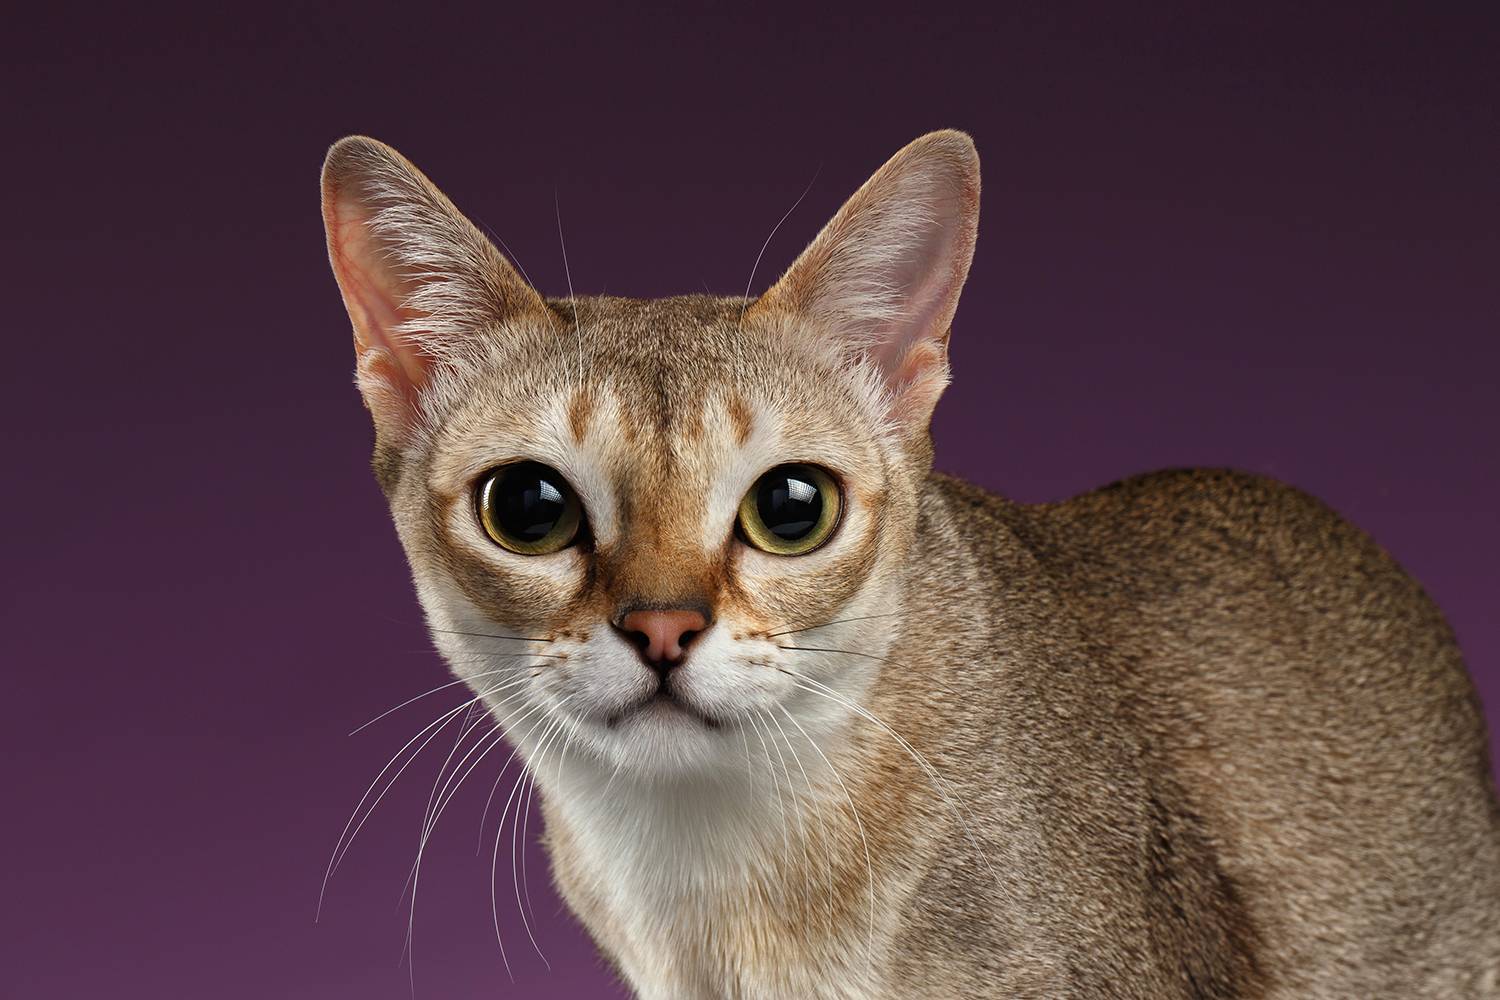 Сингапурские кошки и коты: описание, характер, отзывы (с фото и видео)